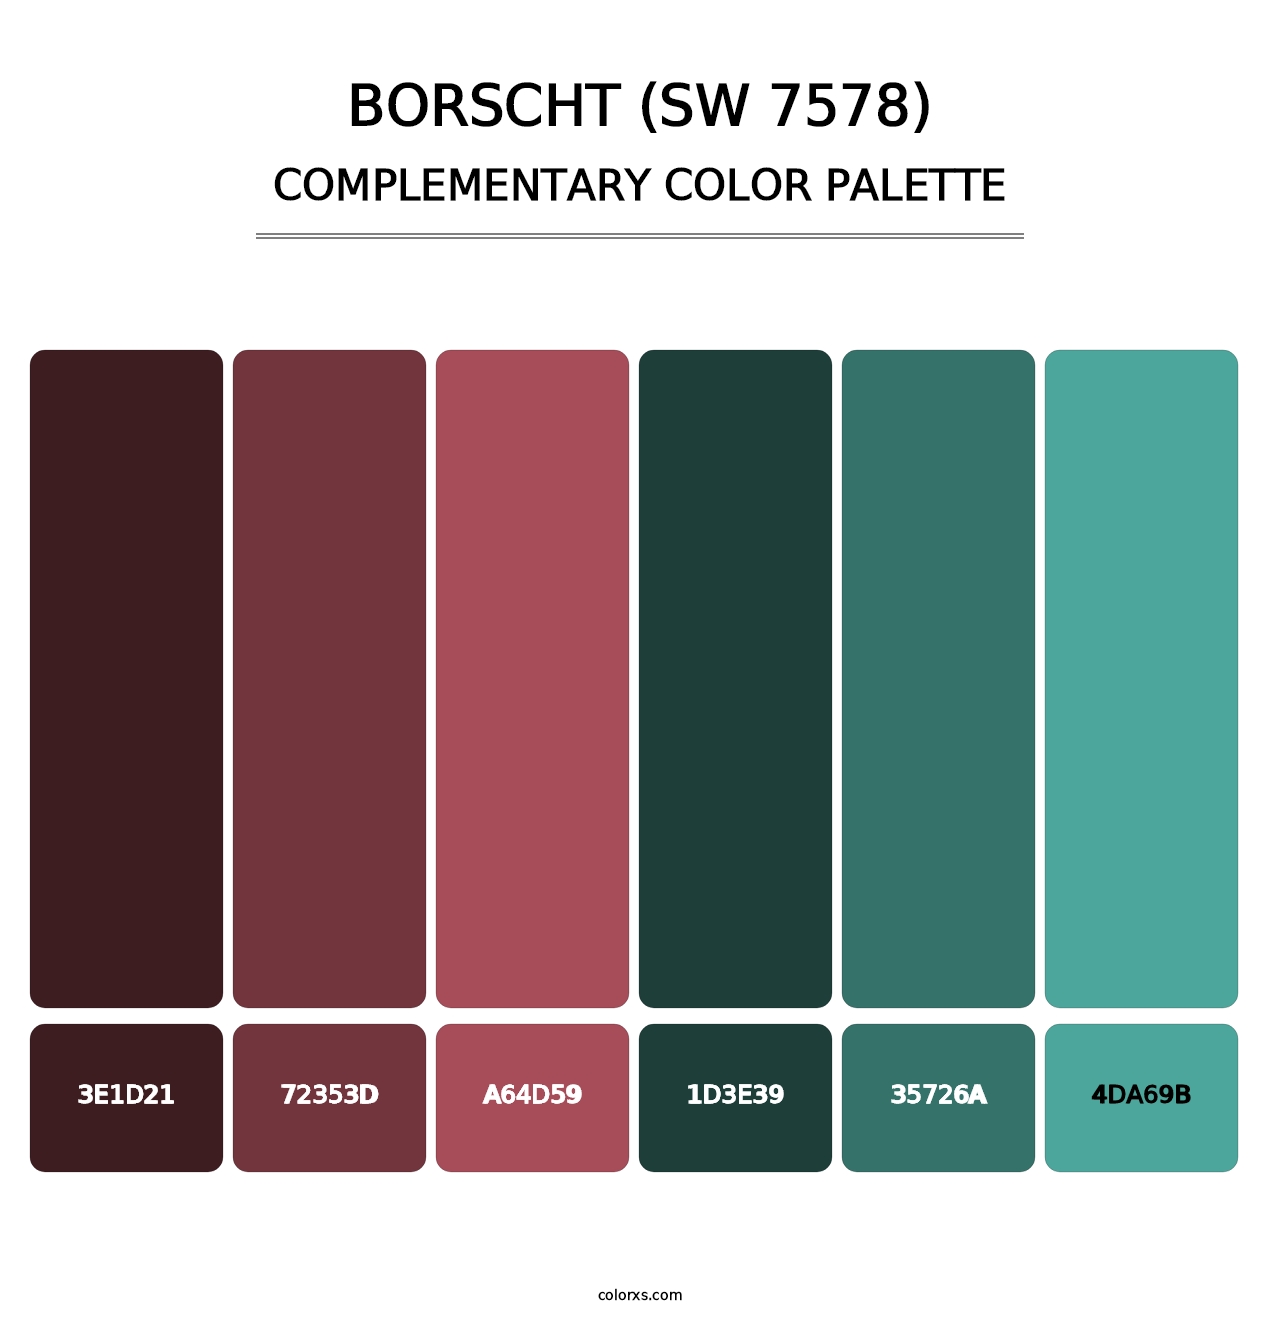 Borscht (SW 7578) - Complementary Color Palette